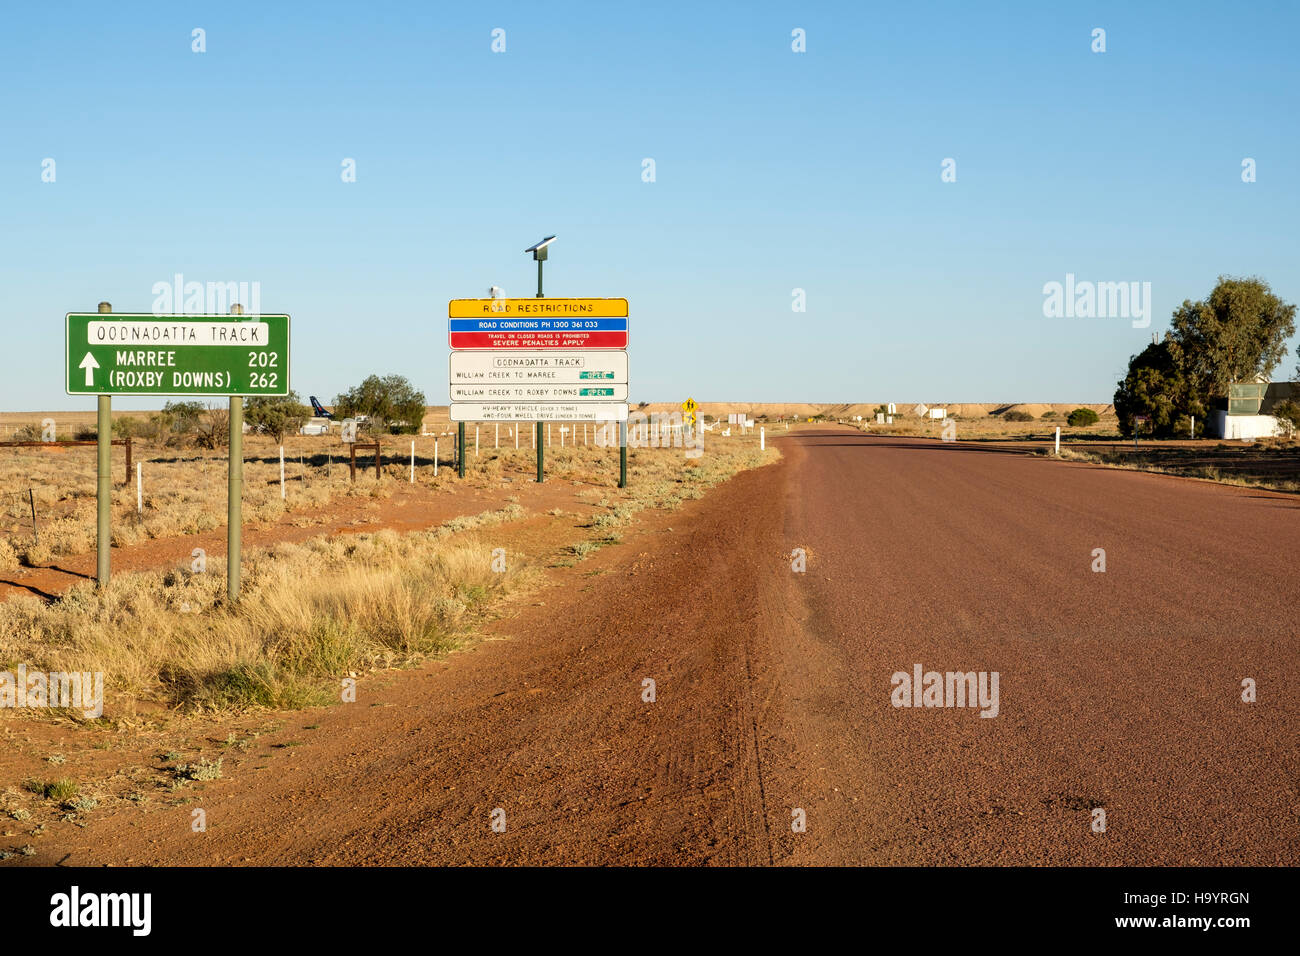 La signalisation routière sur l'Oodnadatta Track menant hors de la plus petite ville d'Australie, William Creek dans le sud de l'Australie de l'Outback. Banque D'Images